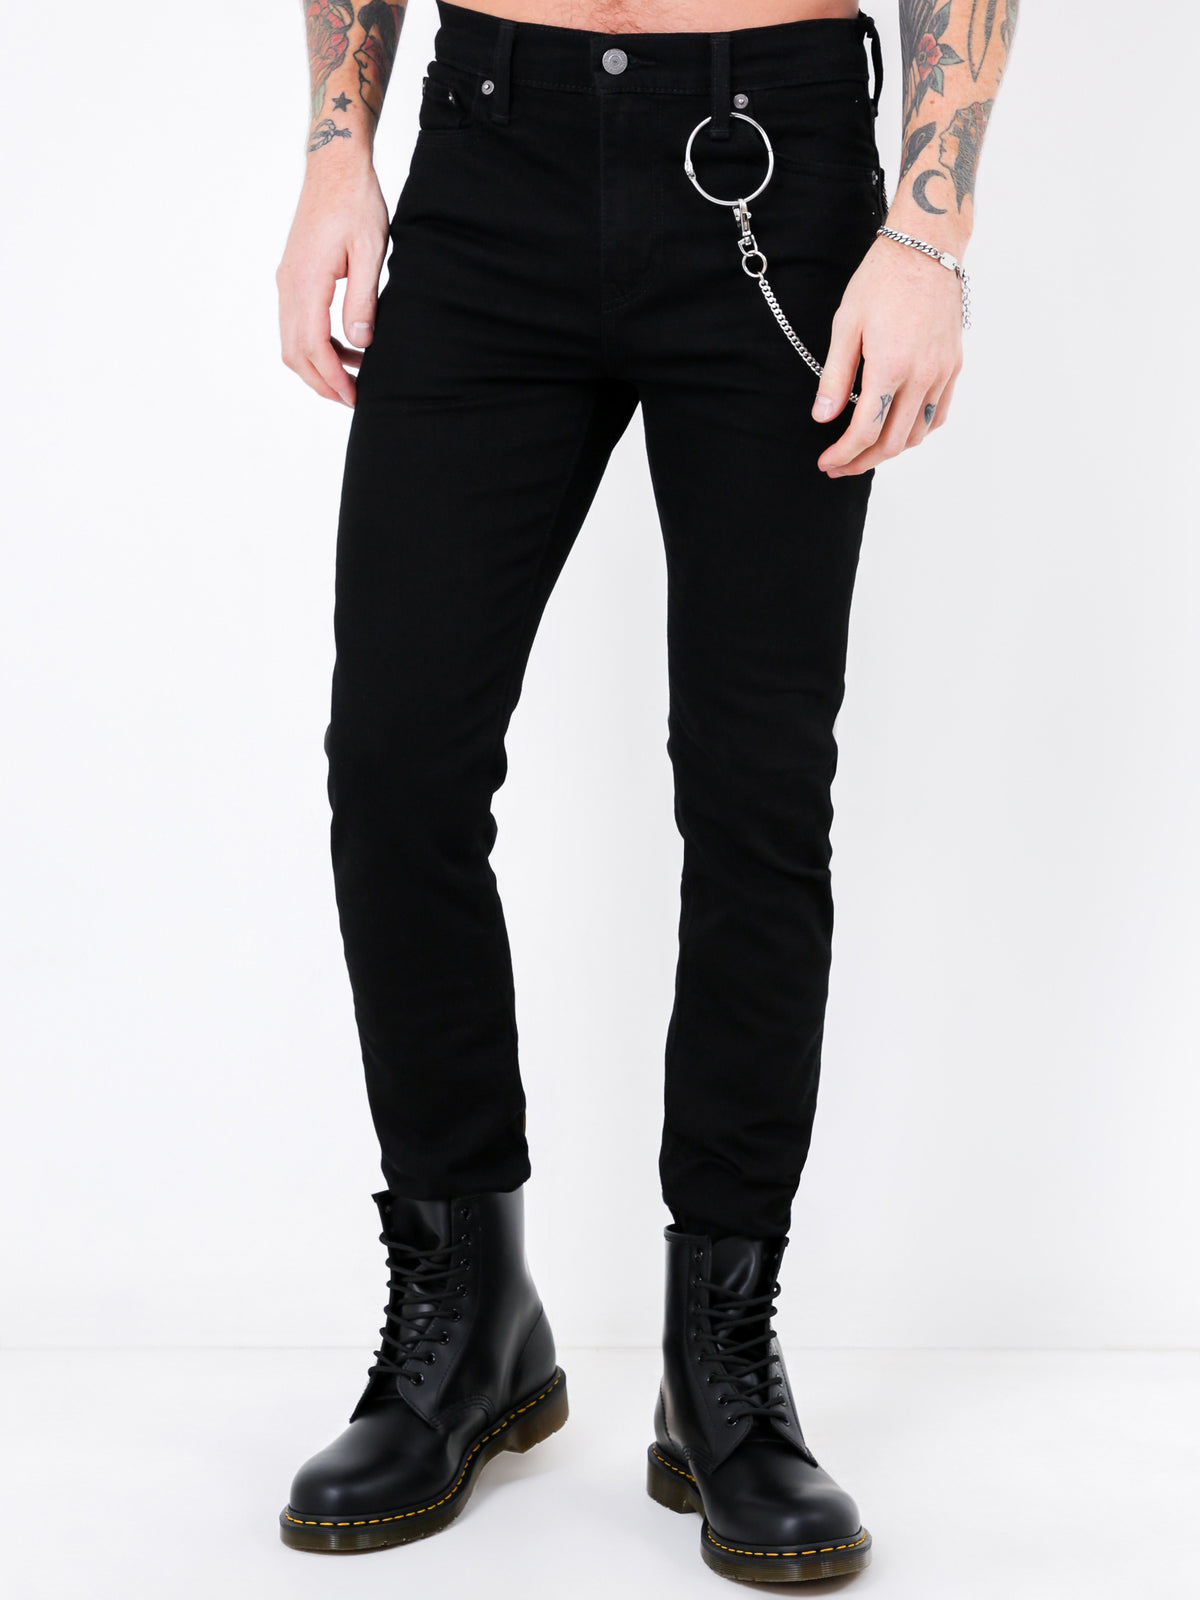 510 Skinny Fit Jeans in Nightshine Black Denim